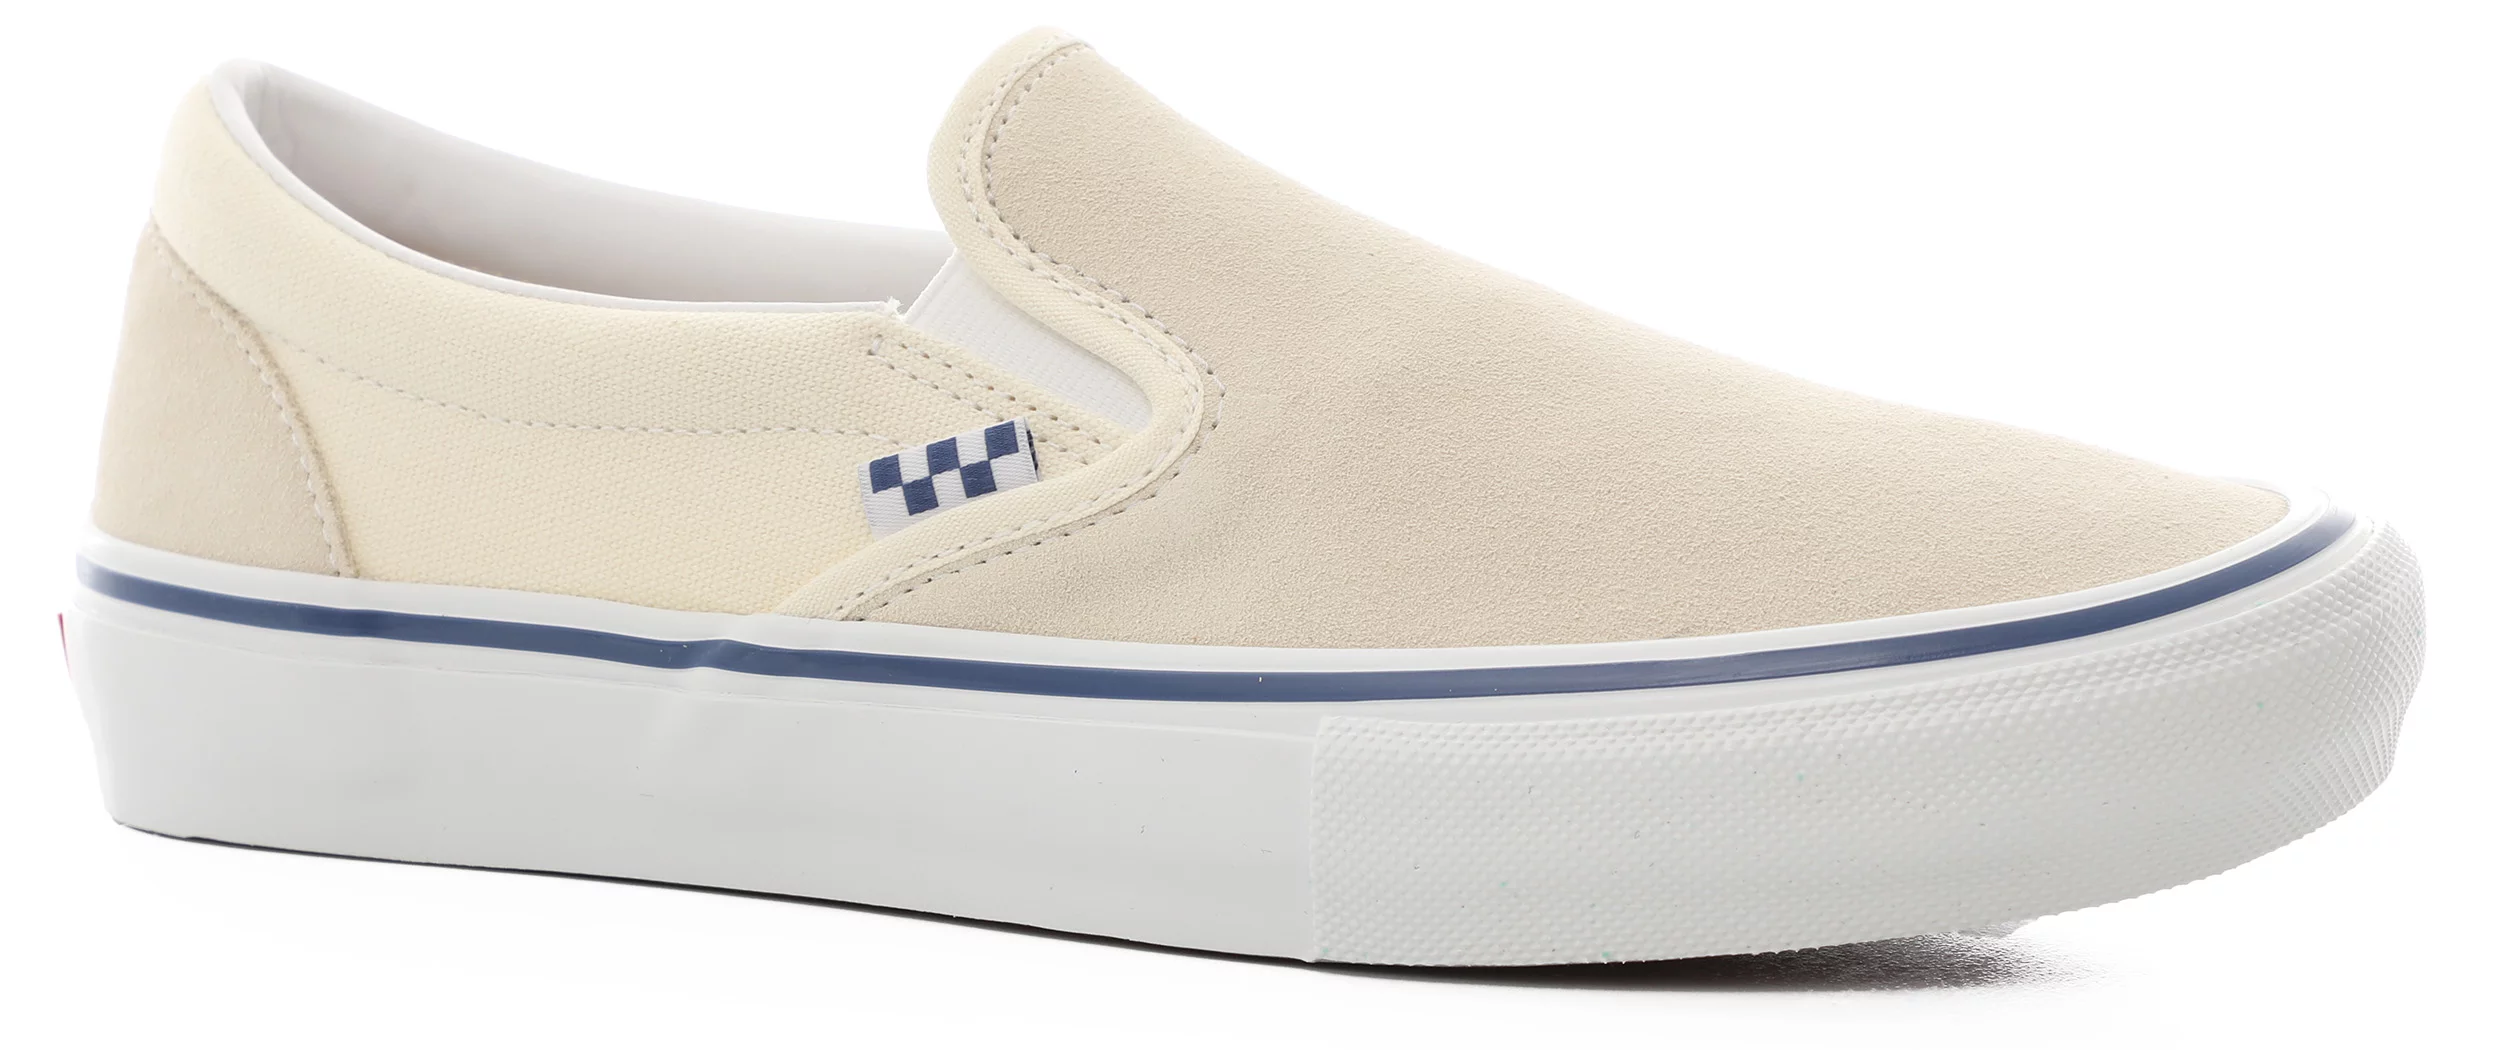 Vans Skate Slip-On Shoes - off white | Tactics